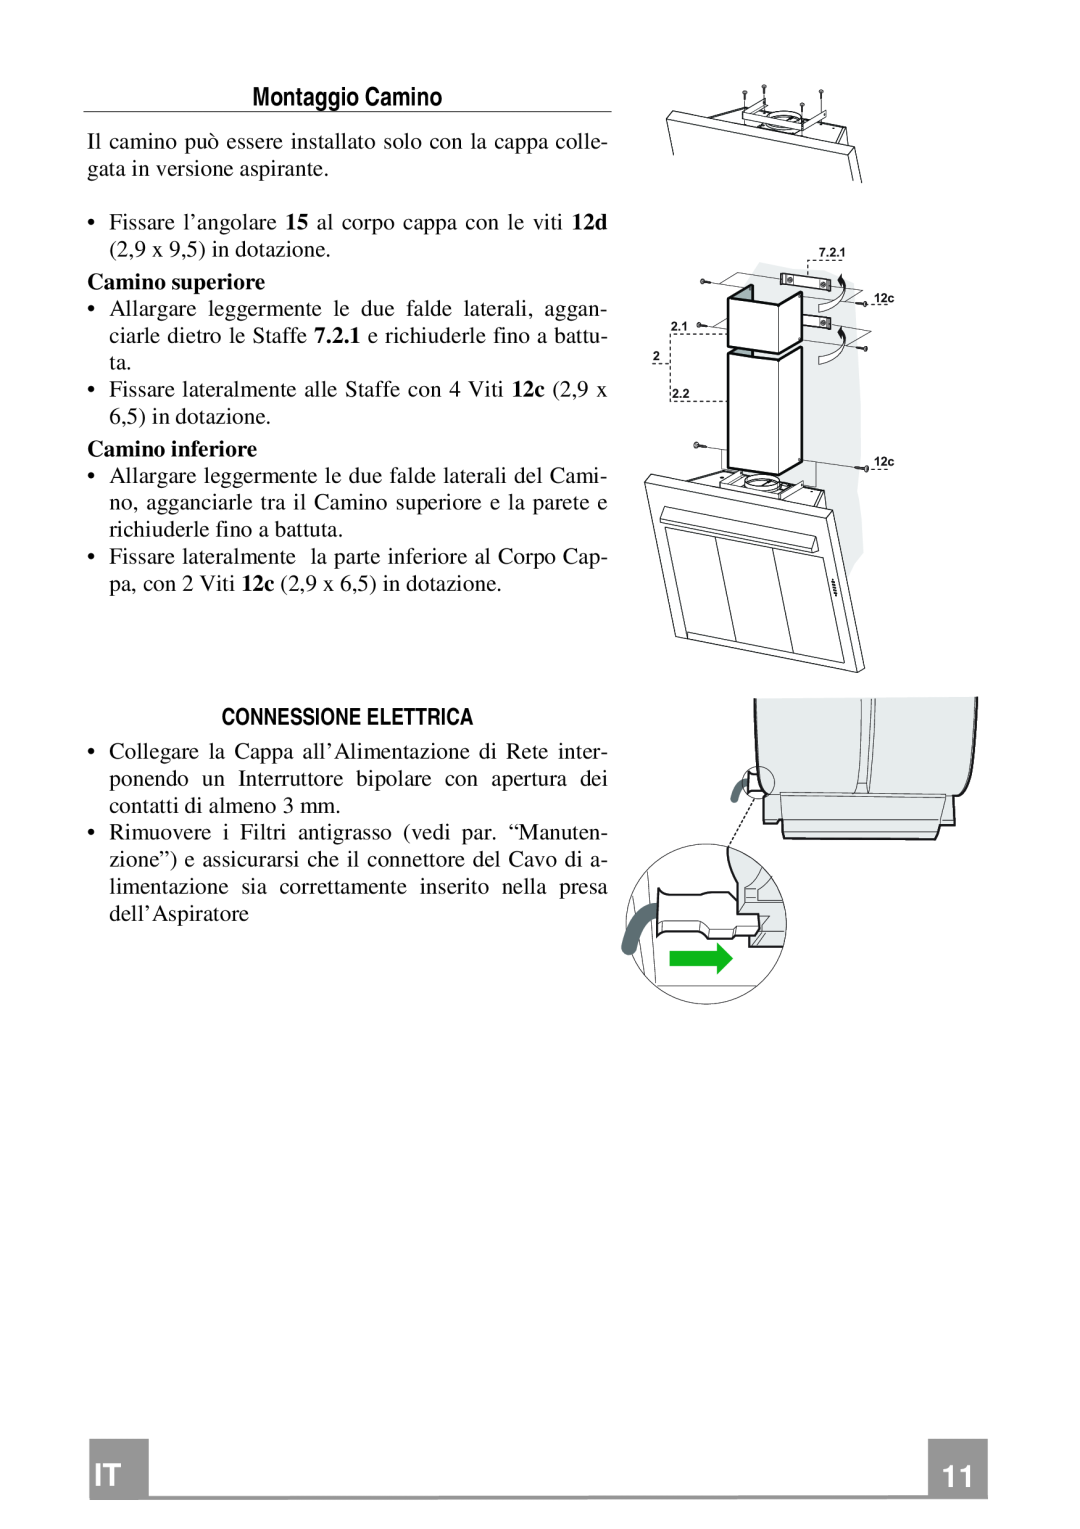 Franke Consumer Products FQD 907 manual Montaggio Camino, Connessione Elettrica 